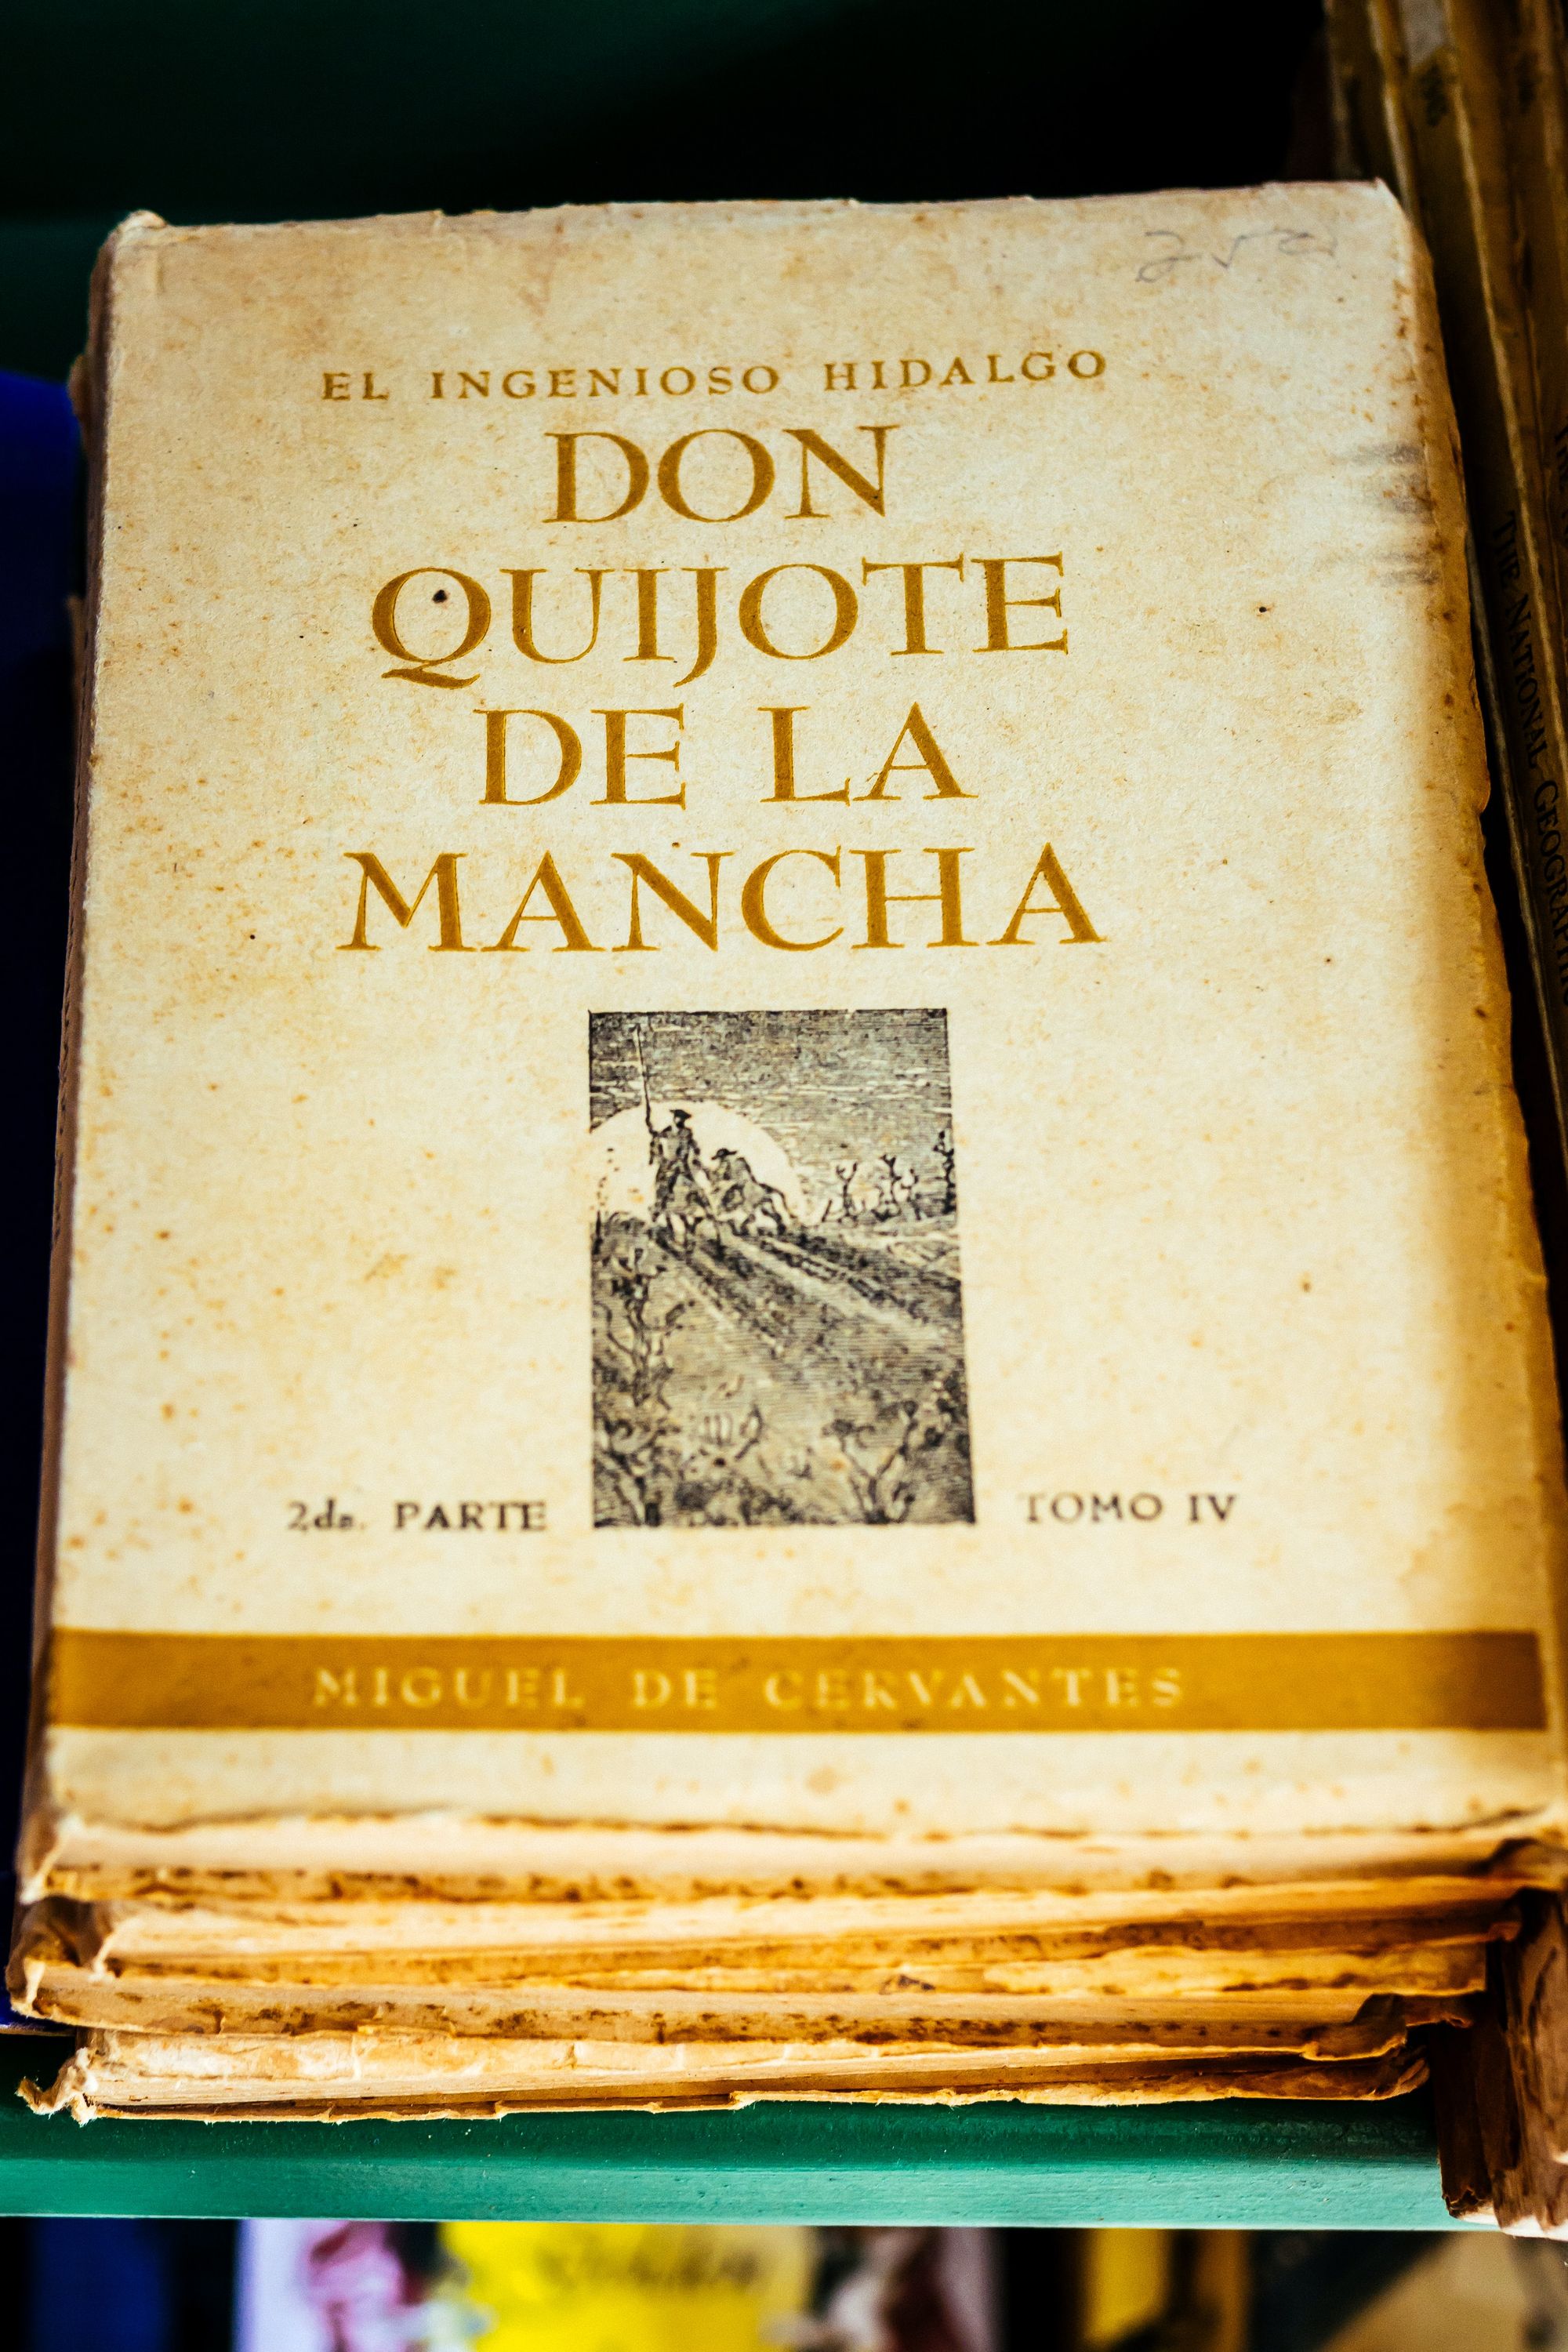 An old copy of Don Quijote de la Mancha